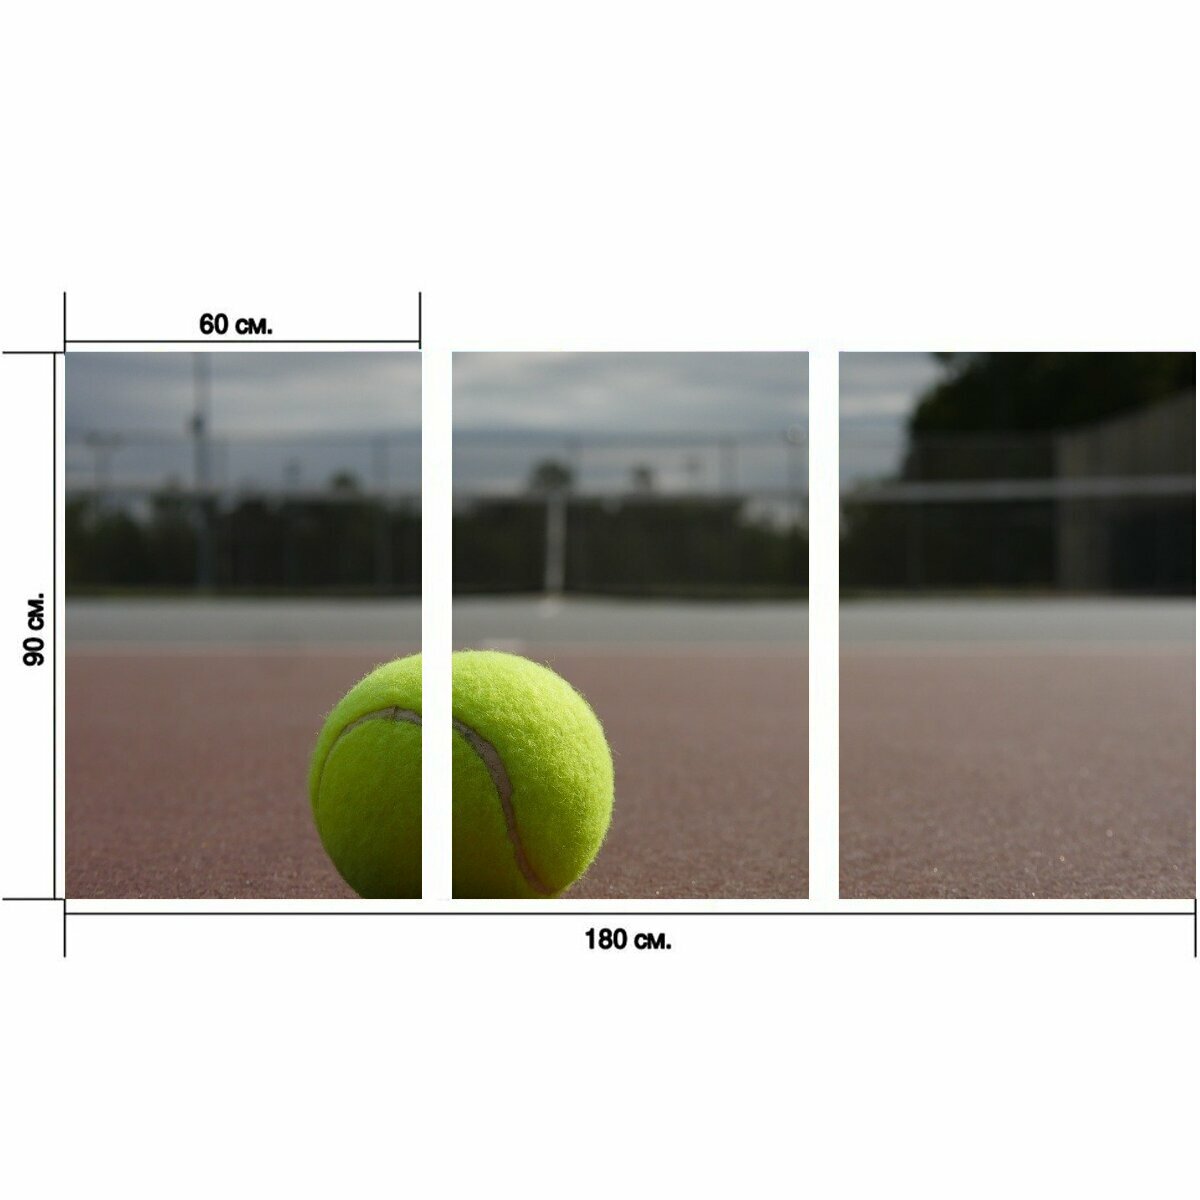 Модульный постер "Теннисный мяч, корт, большой теннис" 180 x 90 см. для интерьера